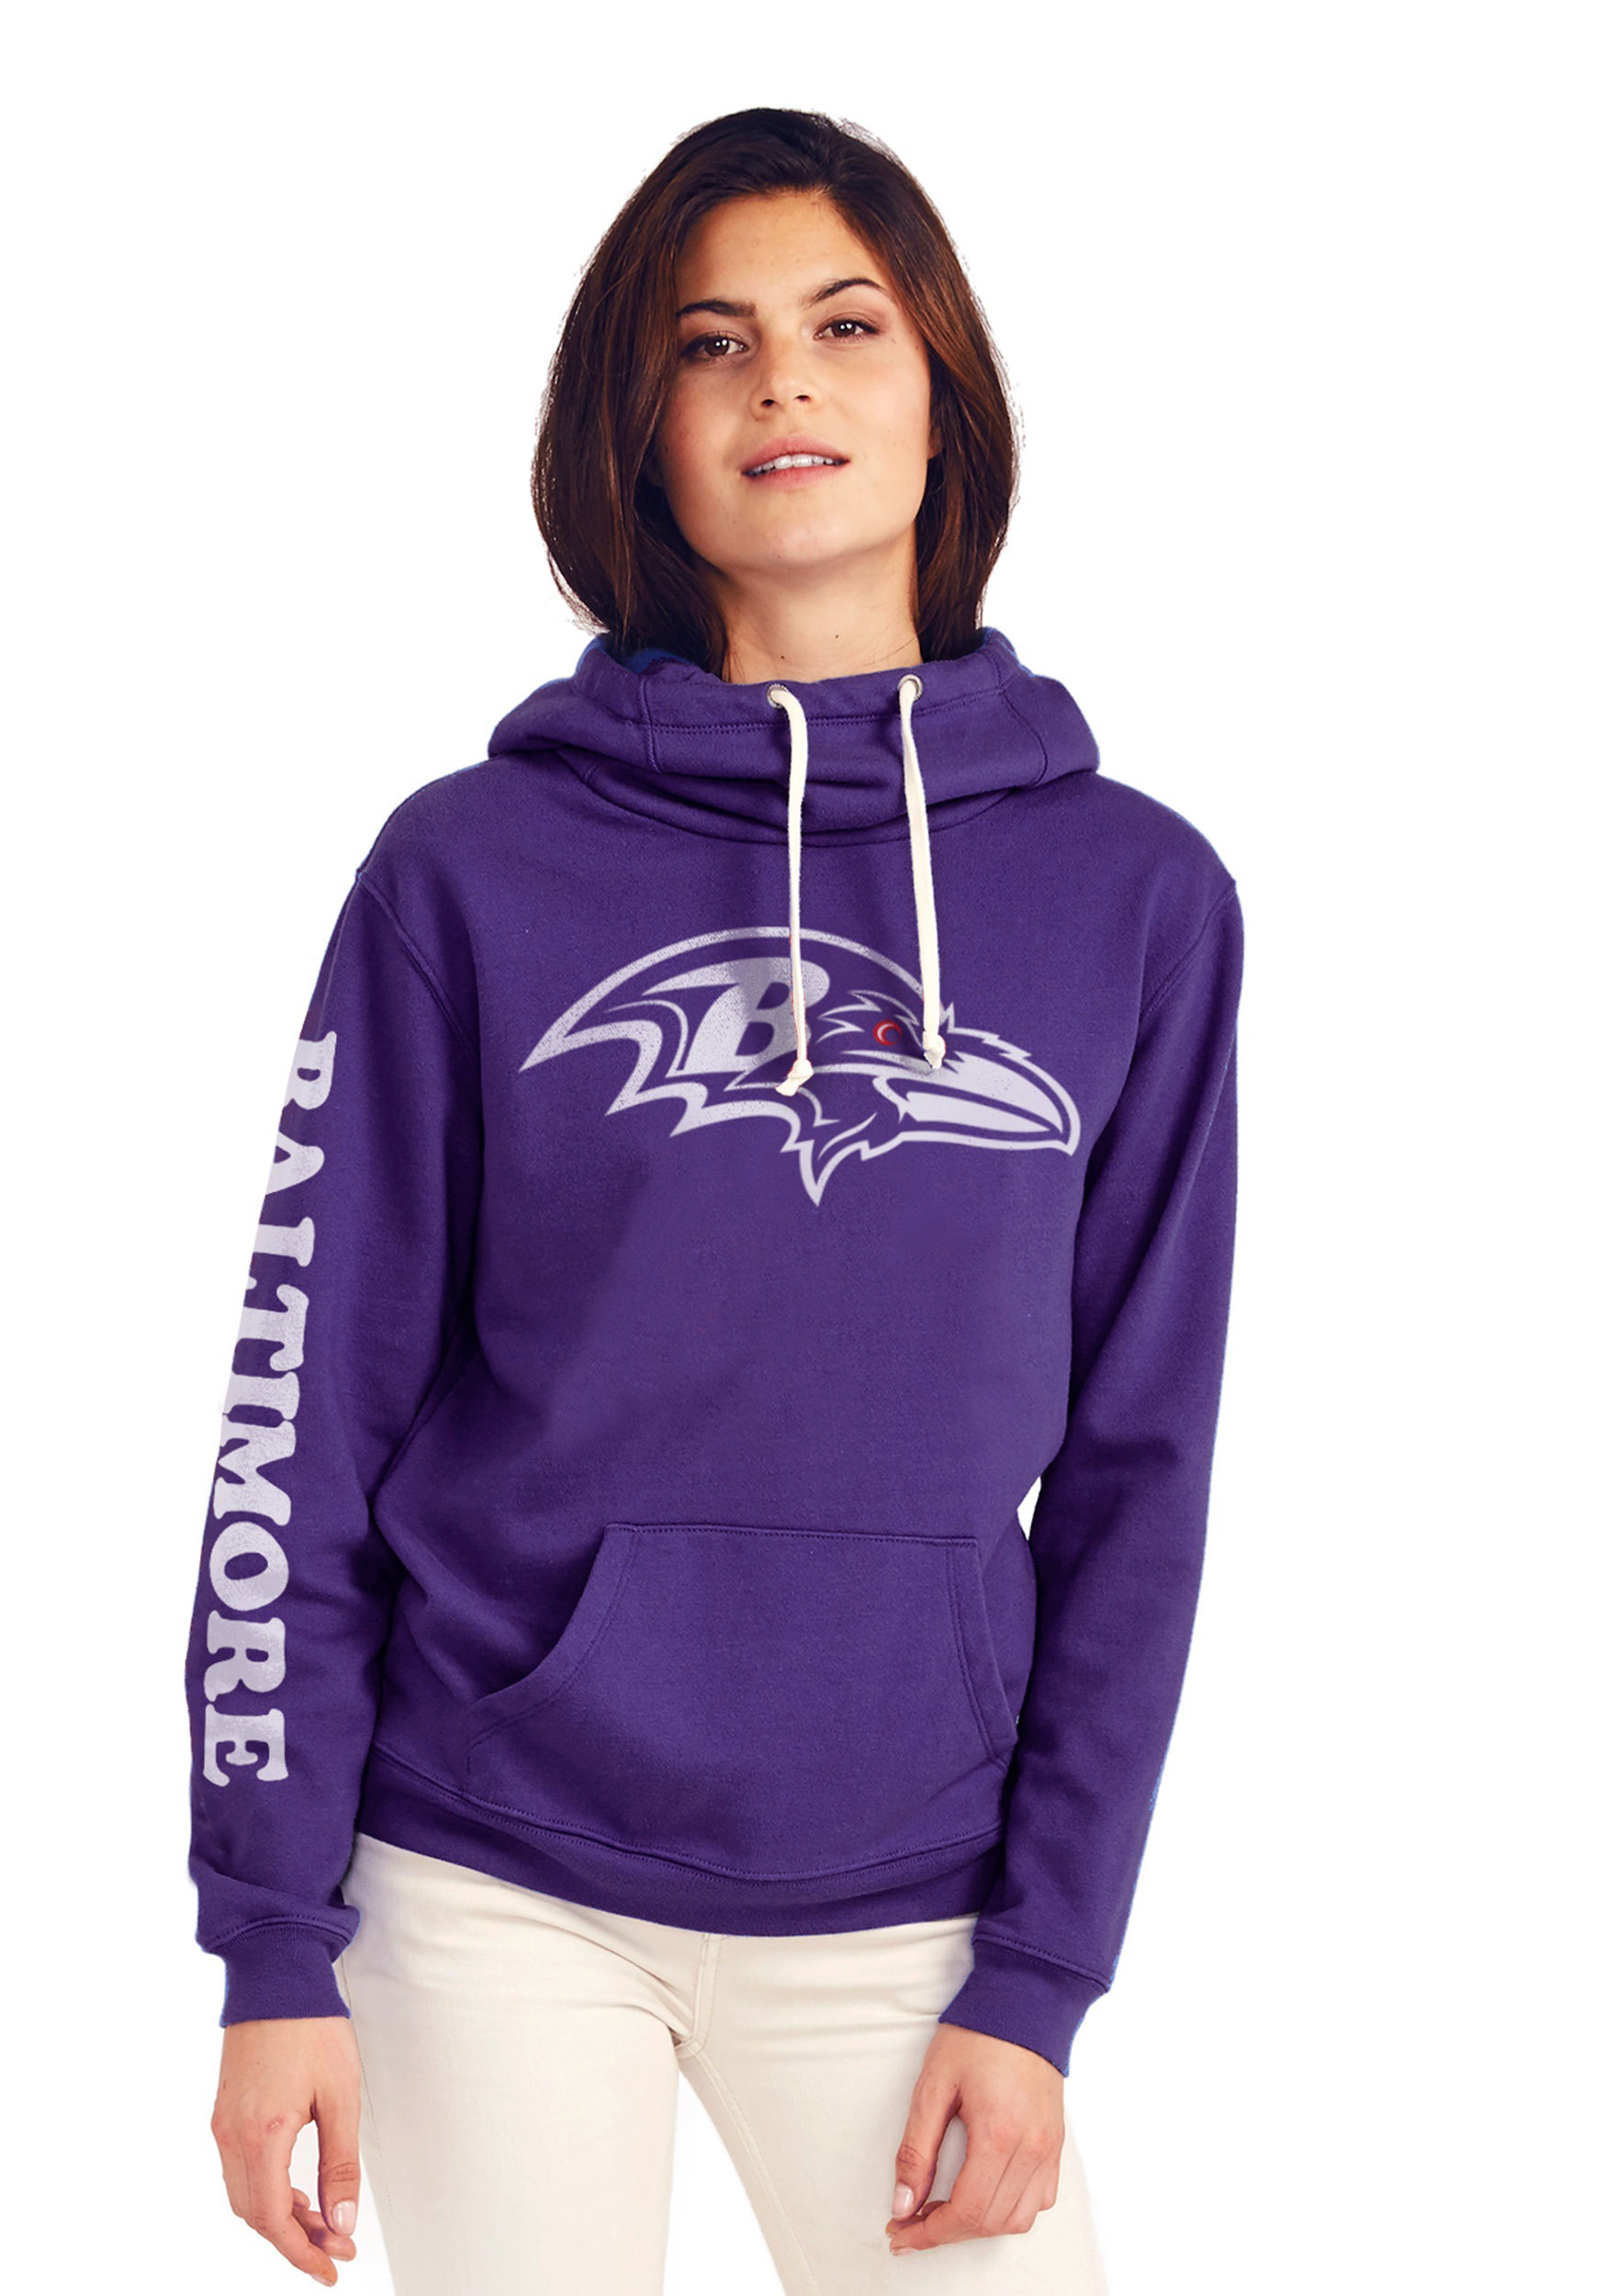 womens ravens hoodie